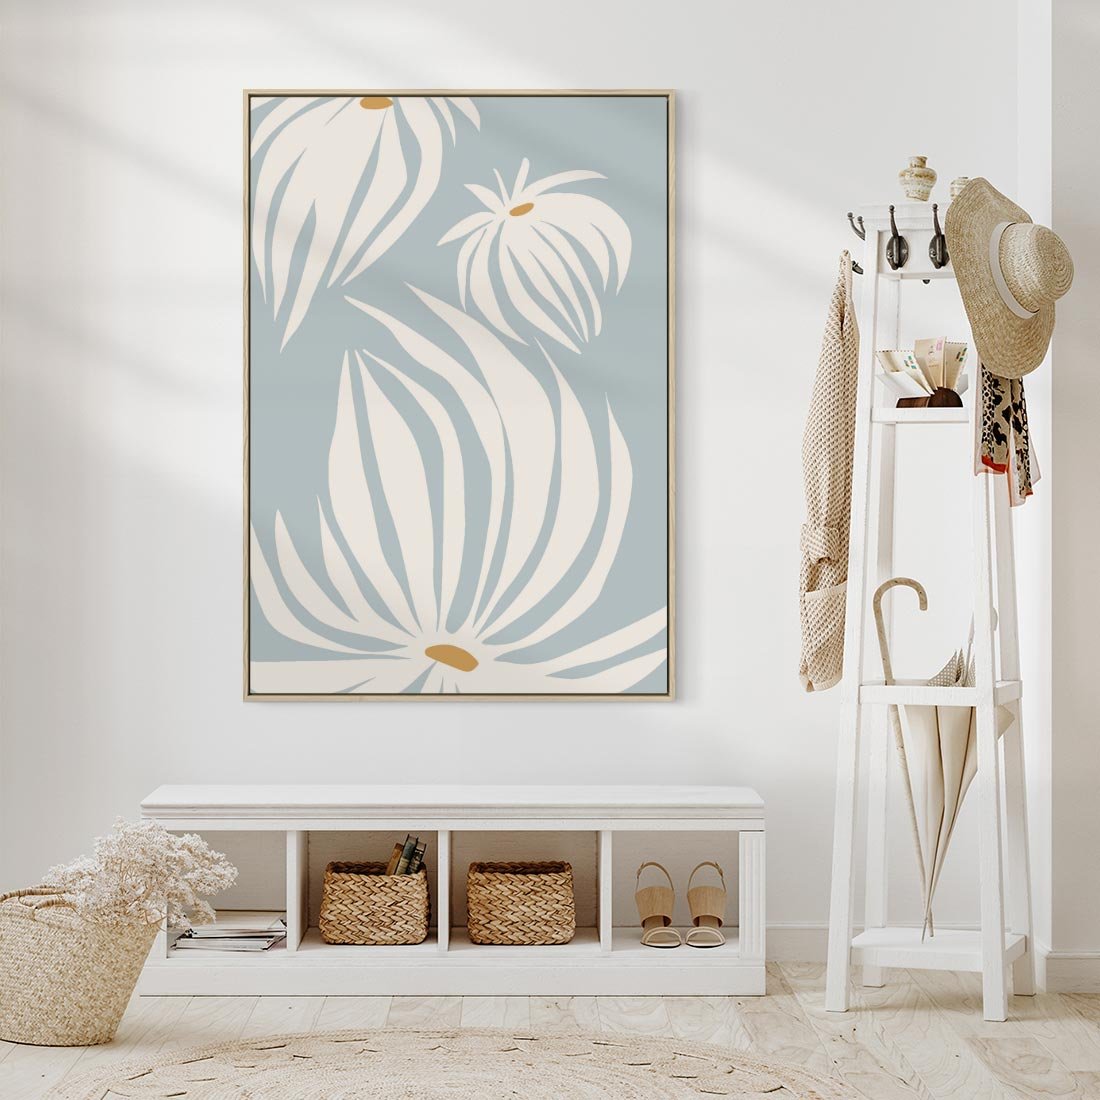 Obraz w ramie 50x70 - Kwiatowe Kształty - kwiaty, nowoczesne i minimalistyczne - rama drewno